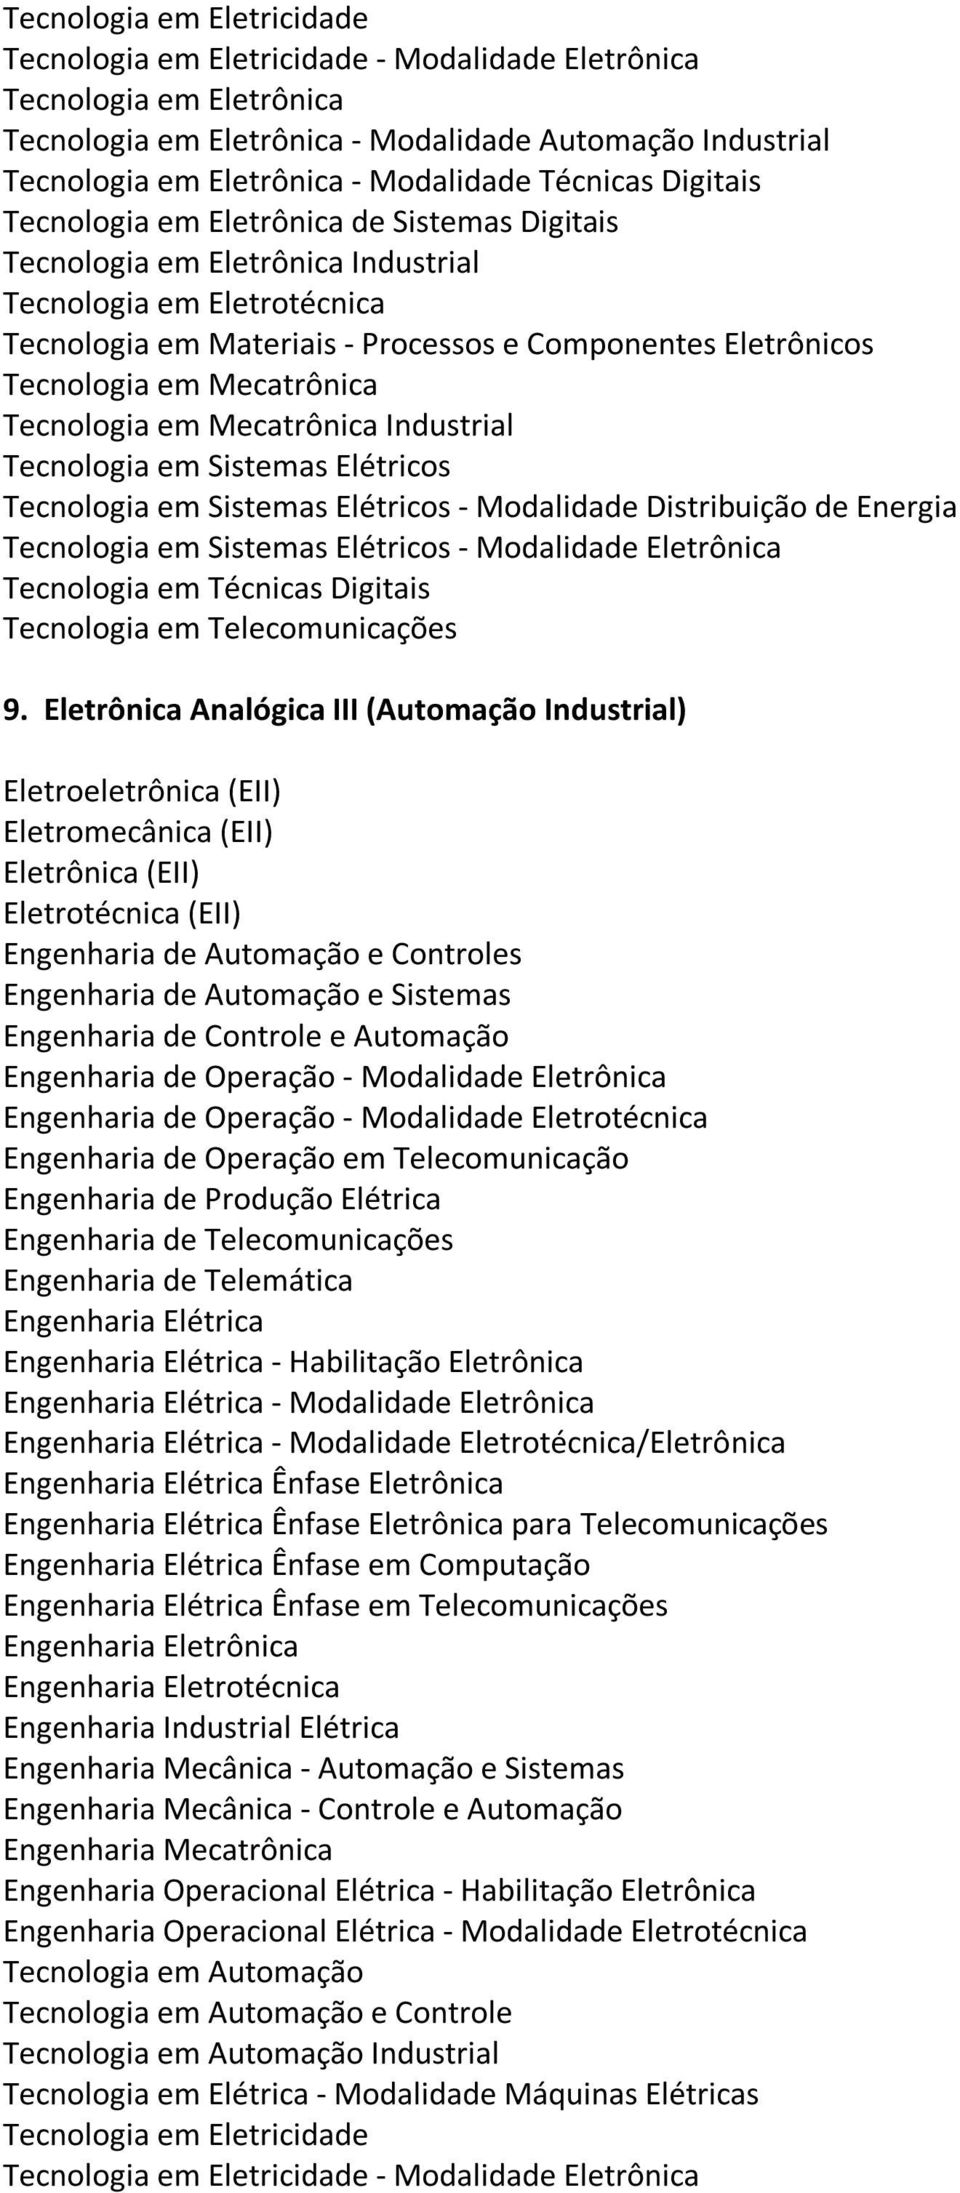 Eletrônica Analógica III (Automação Industrial) - Habilitação Eletrônica -